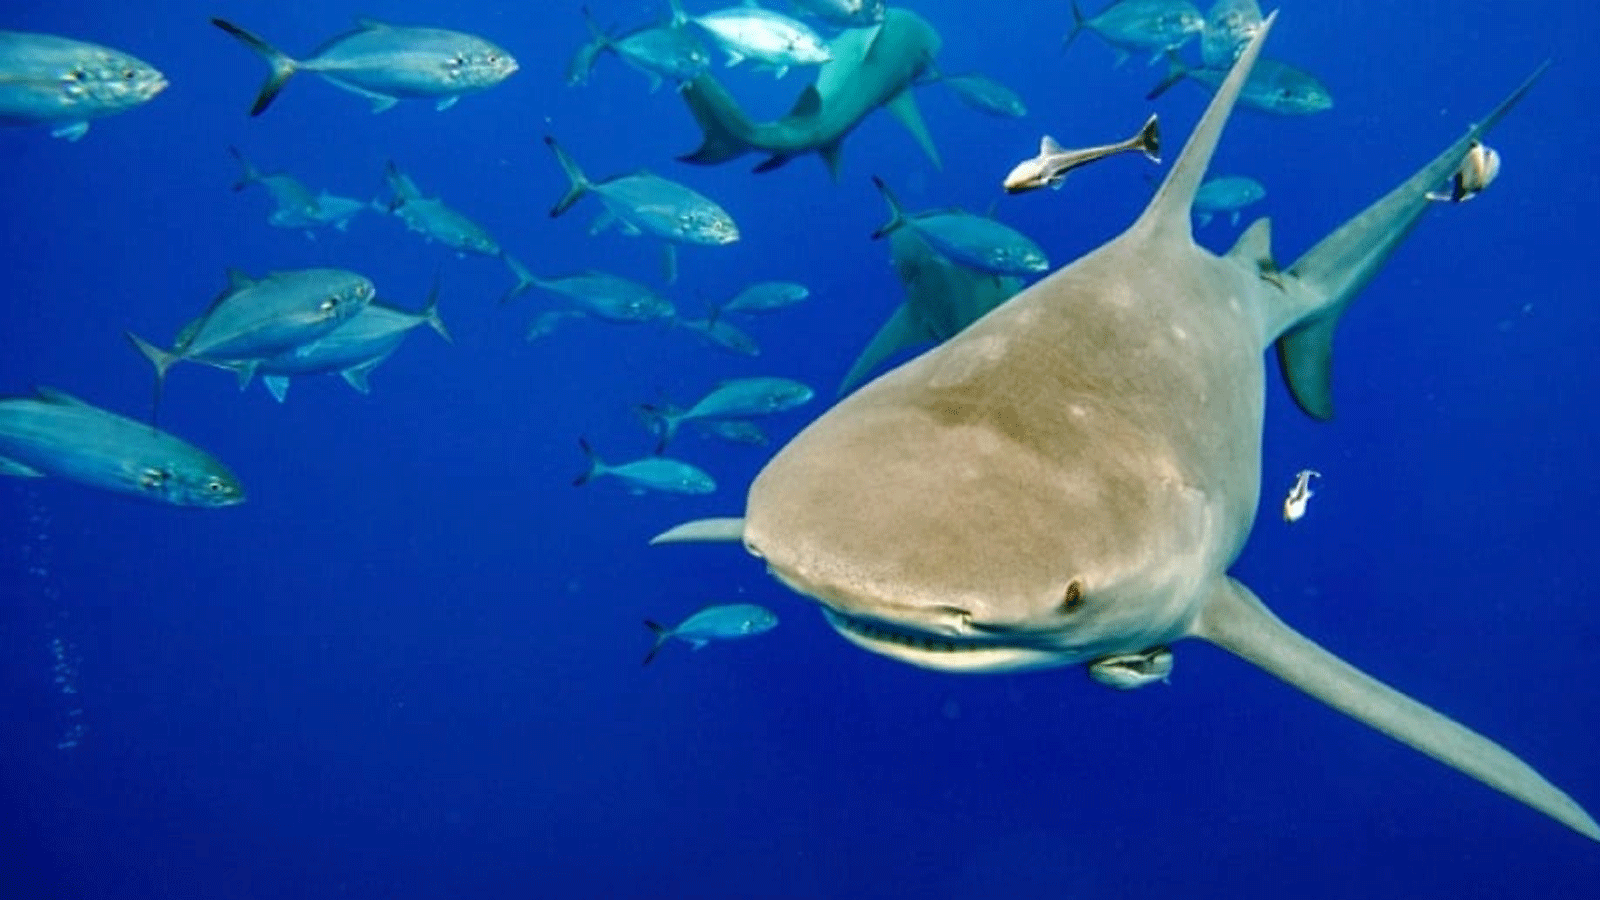  الطلب البشري على حساء زعانف القرش، لا سيما في شرق آسيا، يُهدد تجمعات أسماك القرش